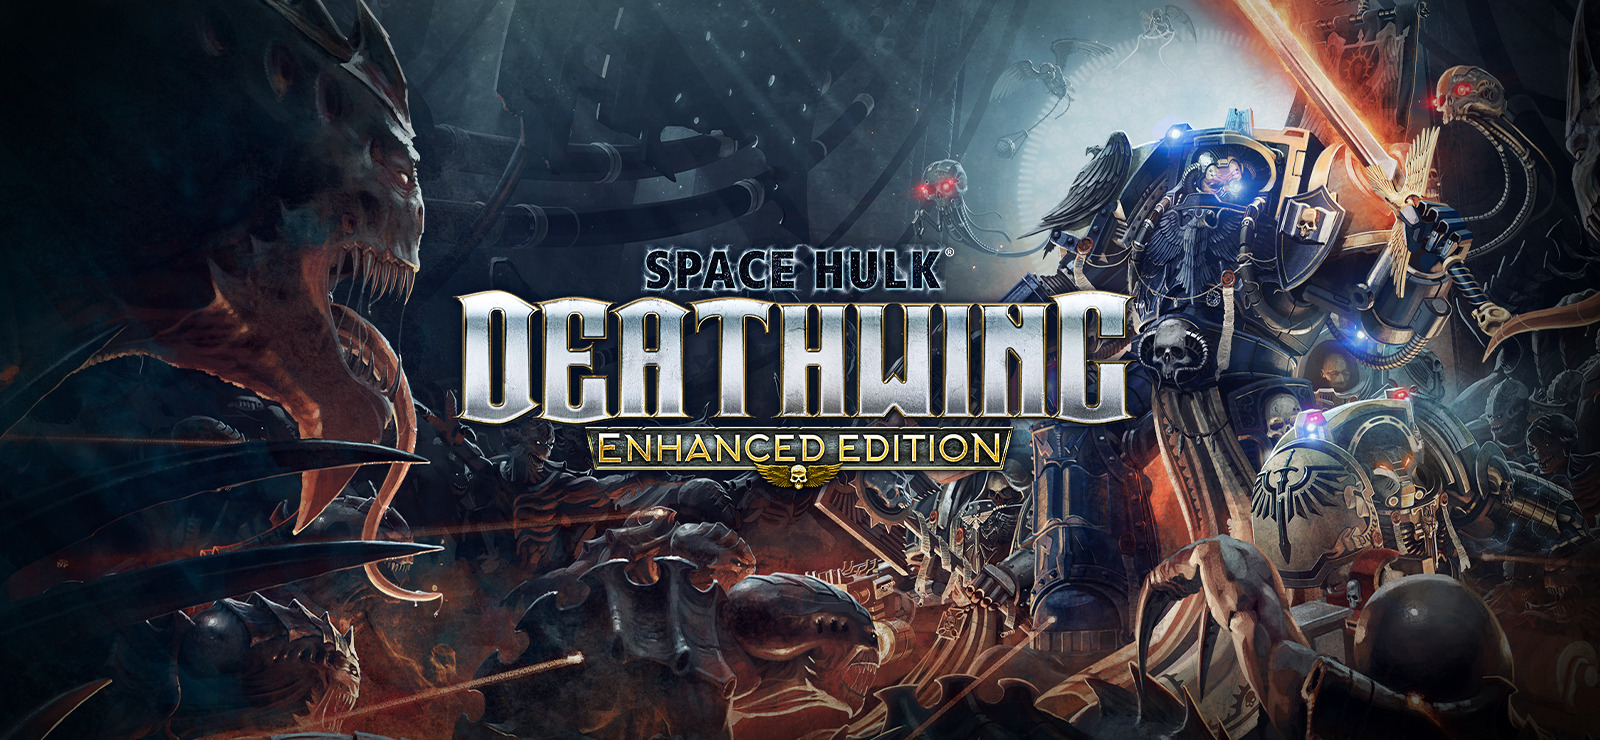 warhammer space hulk deathwing not working on steam